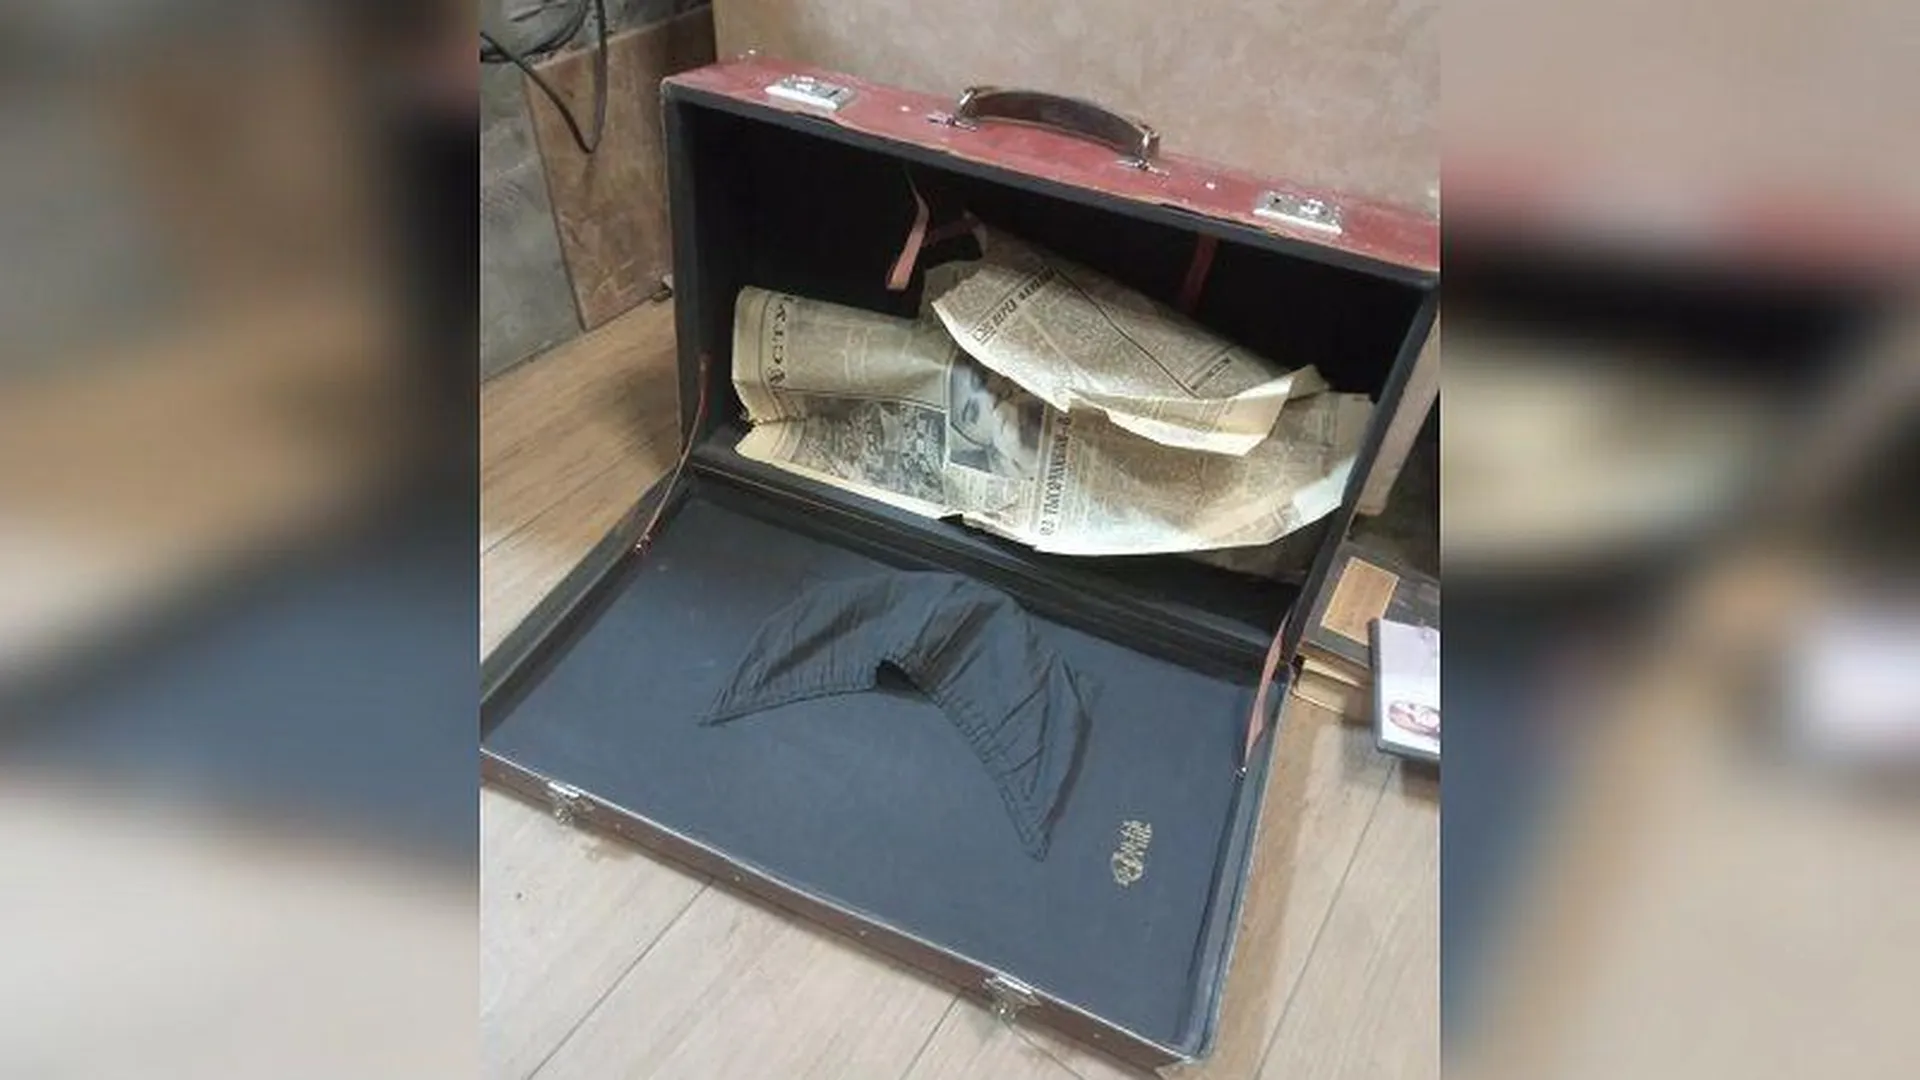 Раритетный чемодан, которым не пользовались почти полвека, продает житель Балашихи